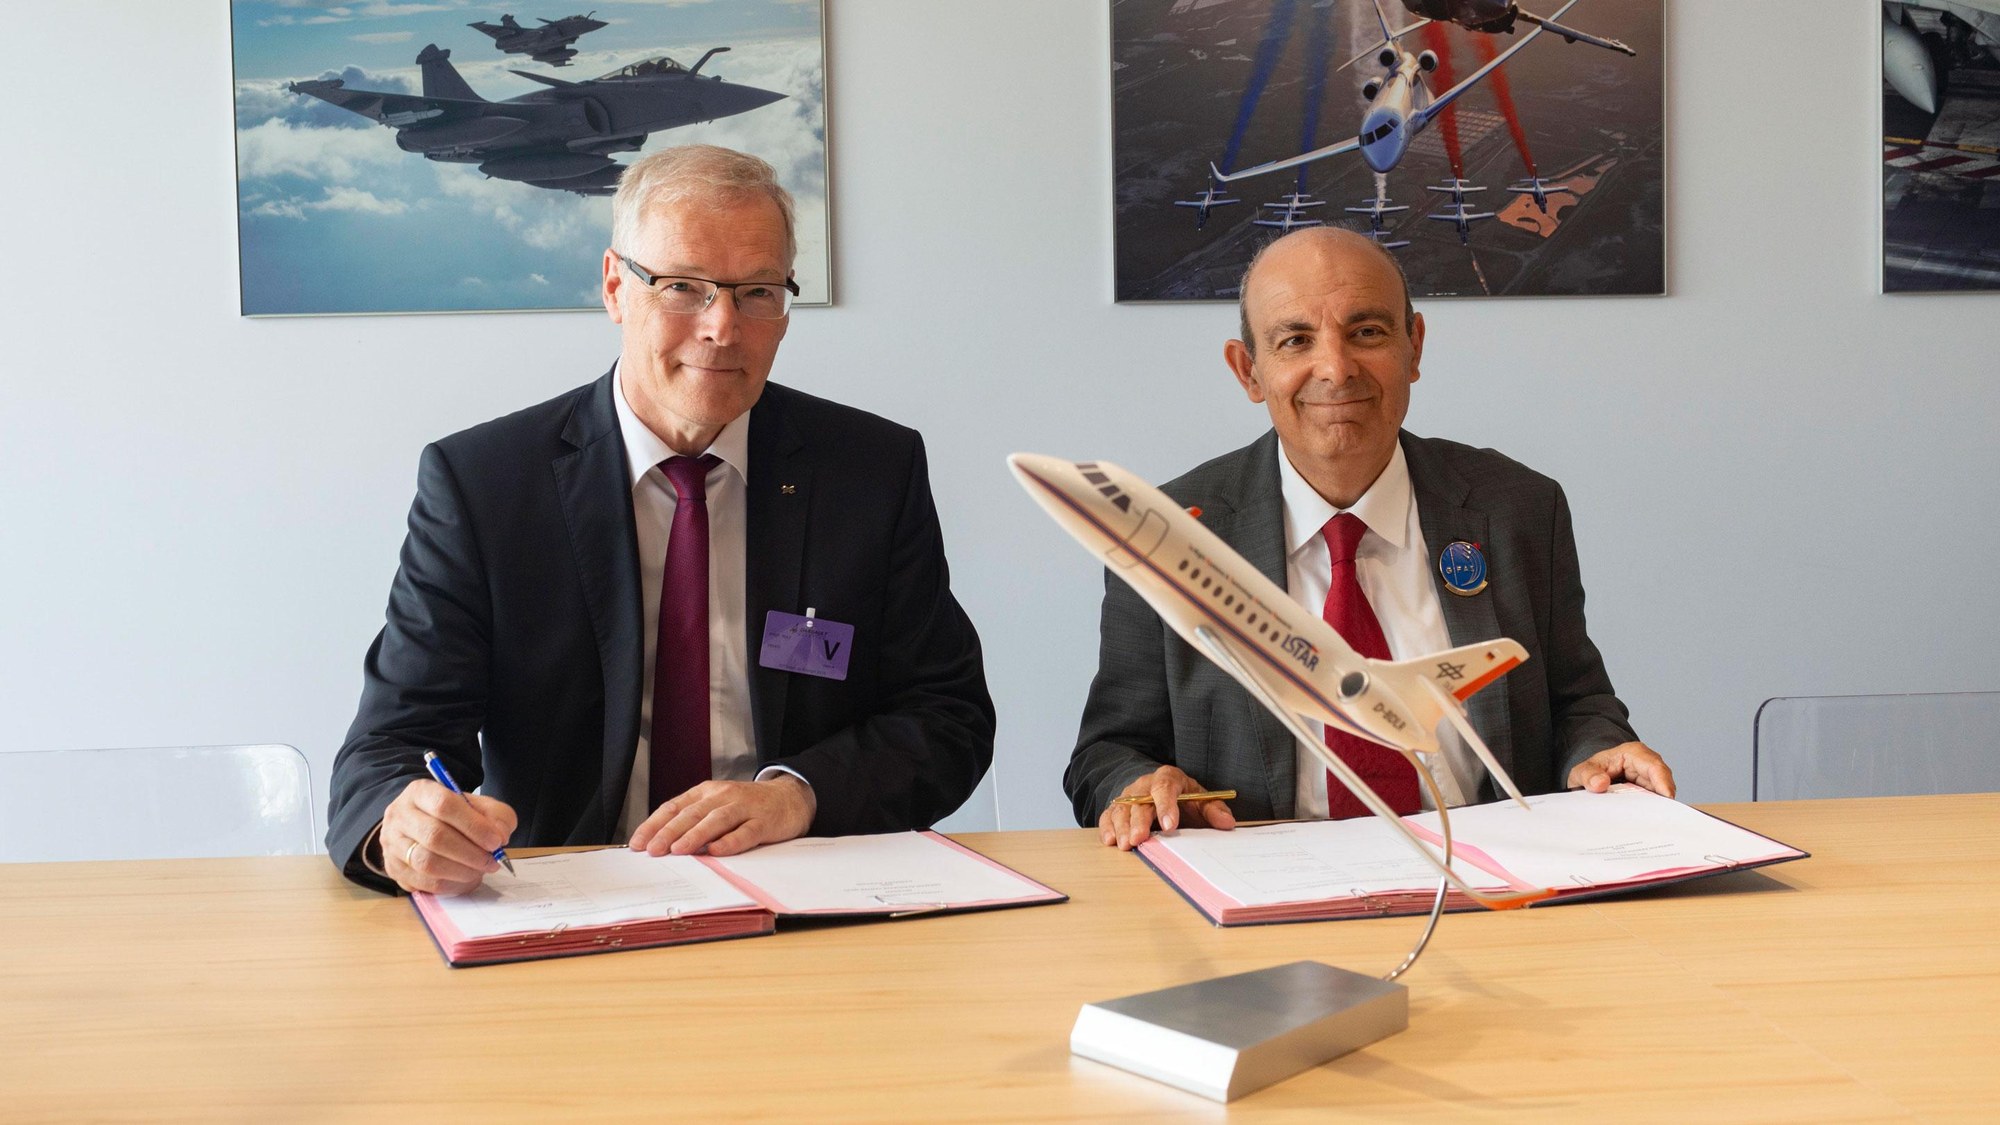 DLR-Luftfahrtvorstand Prof. Rolf Henke und Èric Trappier, CEO bei Dassault Aviation.